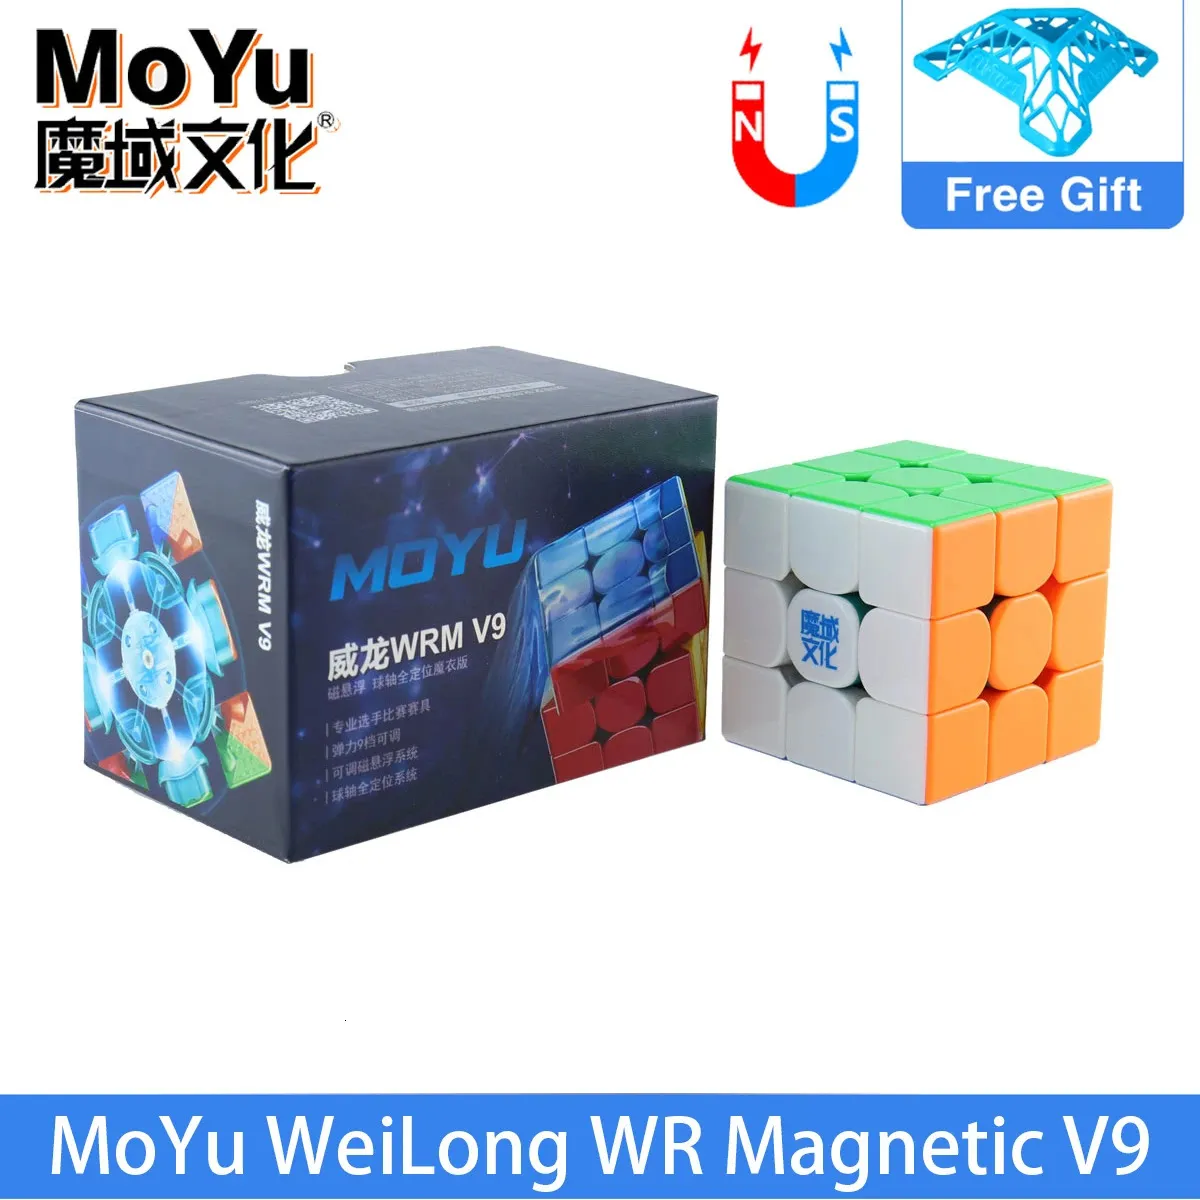 마법 큐브 Moyu Weilong WRM V9 Ball Core UV 3x3 마술 속도 큐브 전문 Moyu Weilong WR M V9 Maglev 3x3x3 Cubo Magico 퍼즐 장난감 231019